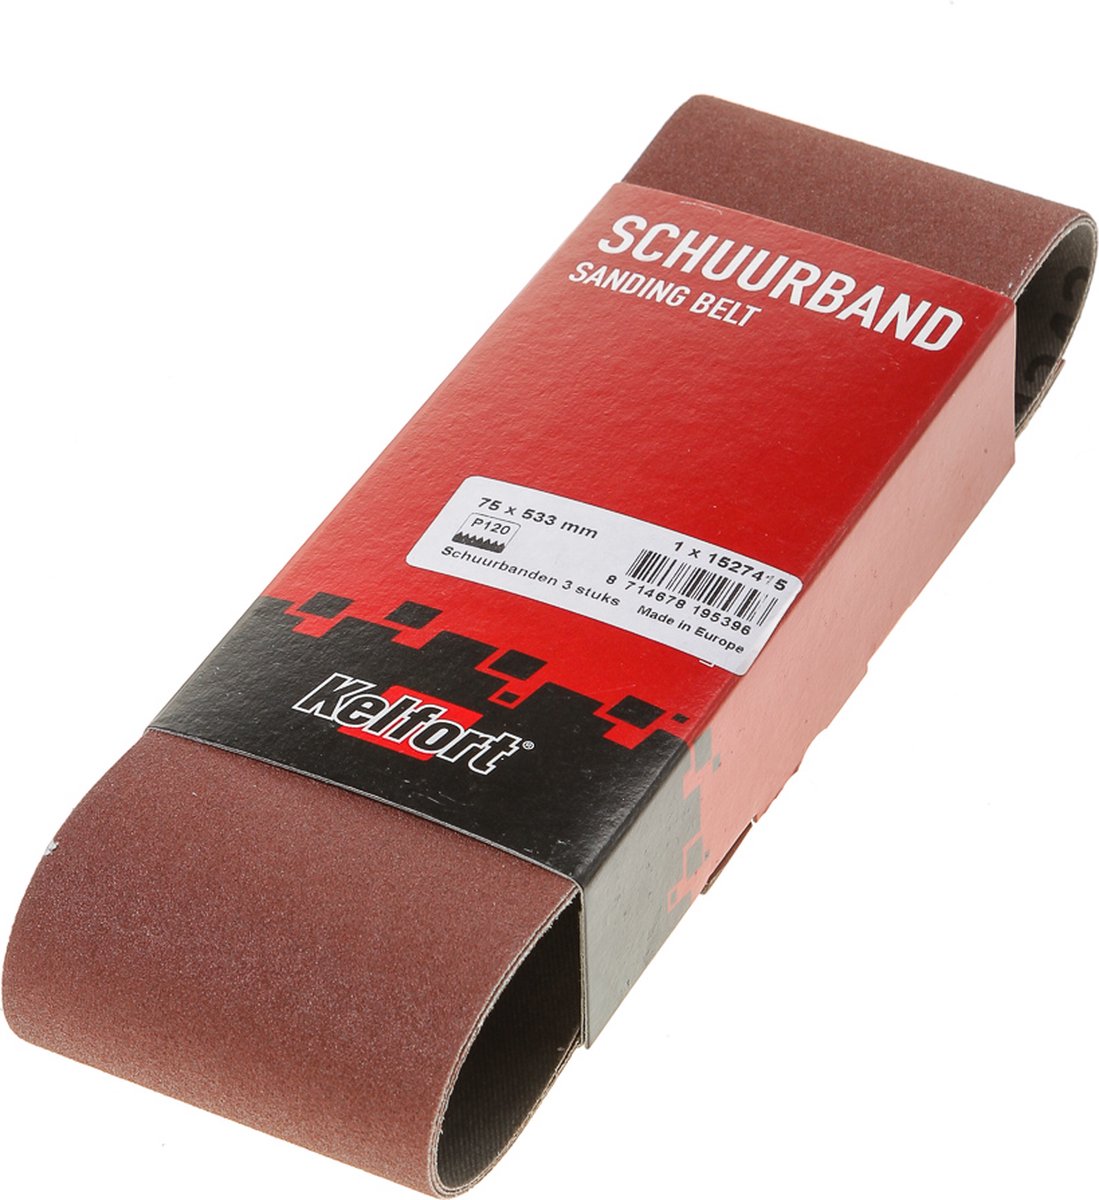 Schuurband 75x533 k120 (3)